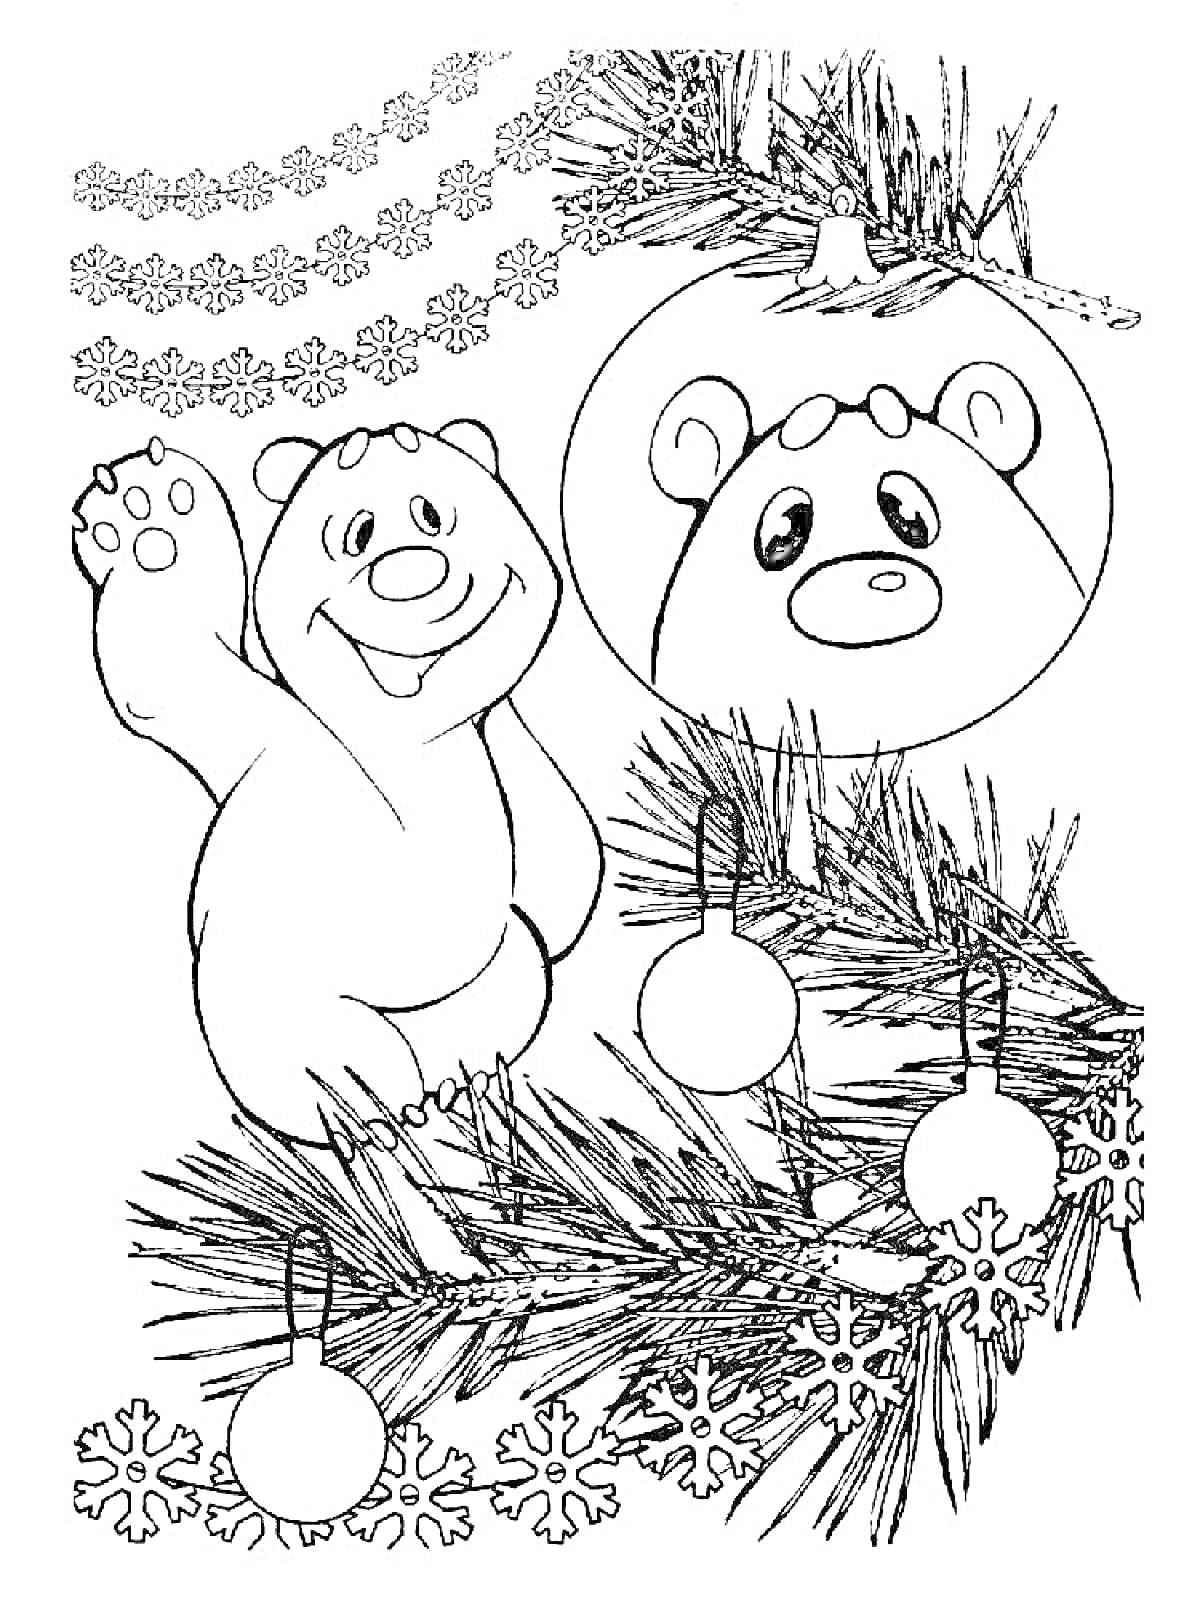 Раскраска Мишка Умка на ветке, новогодние украшения и елочные игрушки